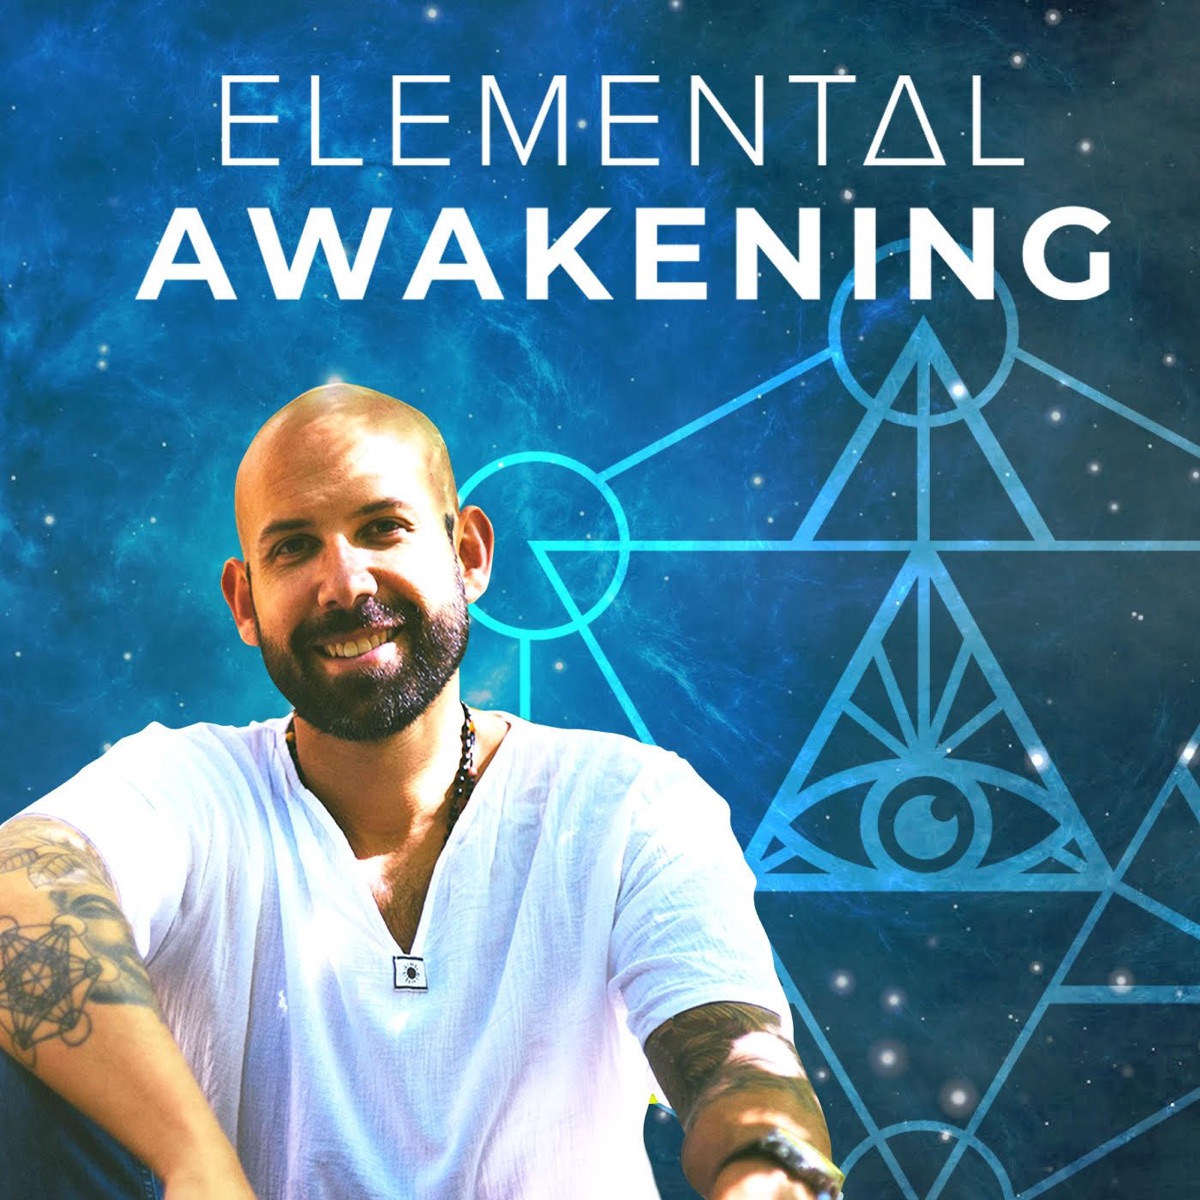 Elemental Awakening. Elemental awakened